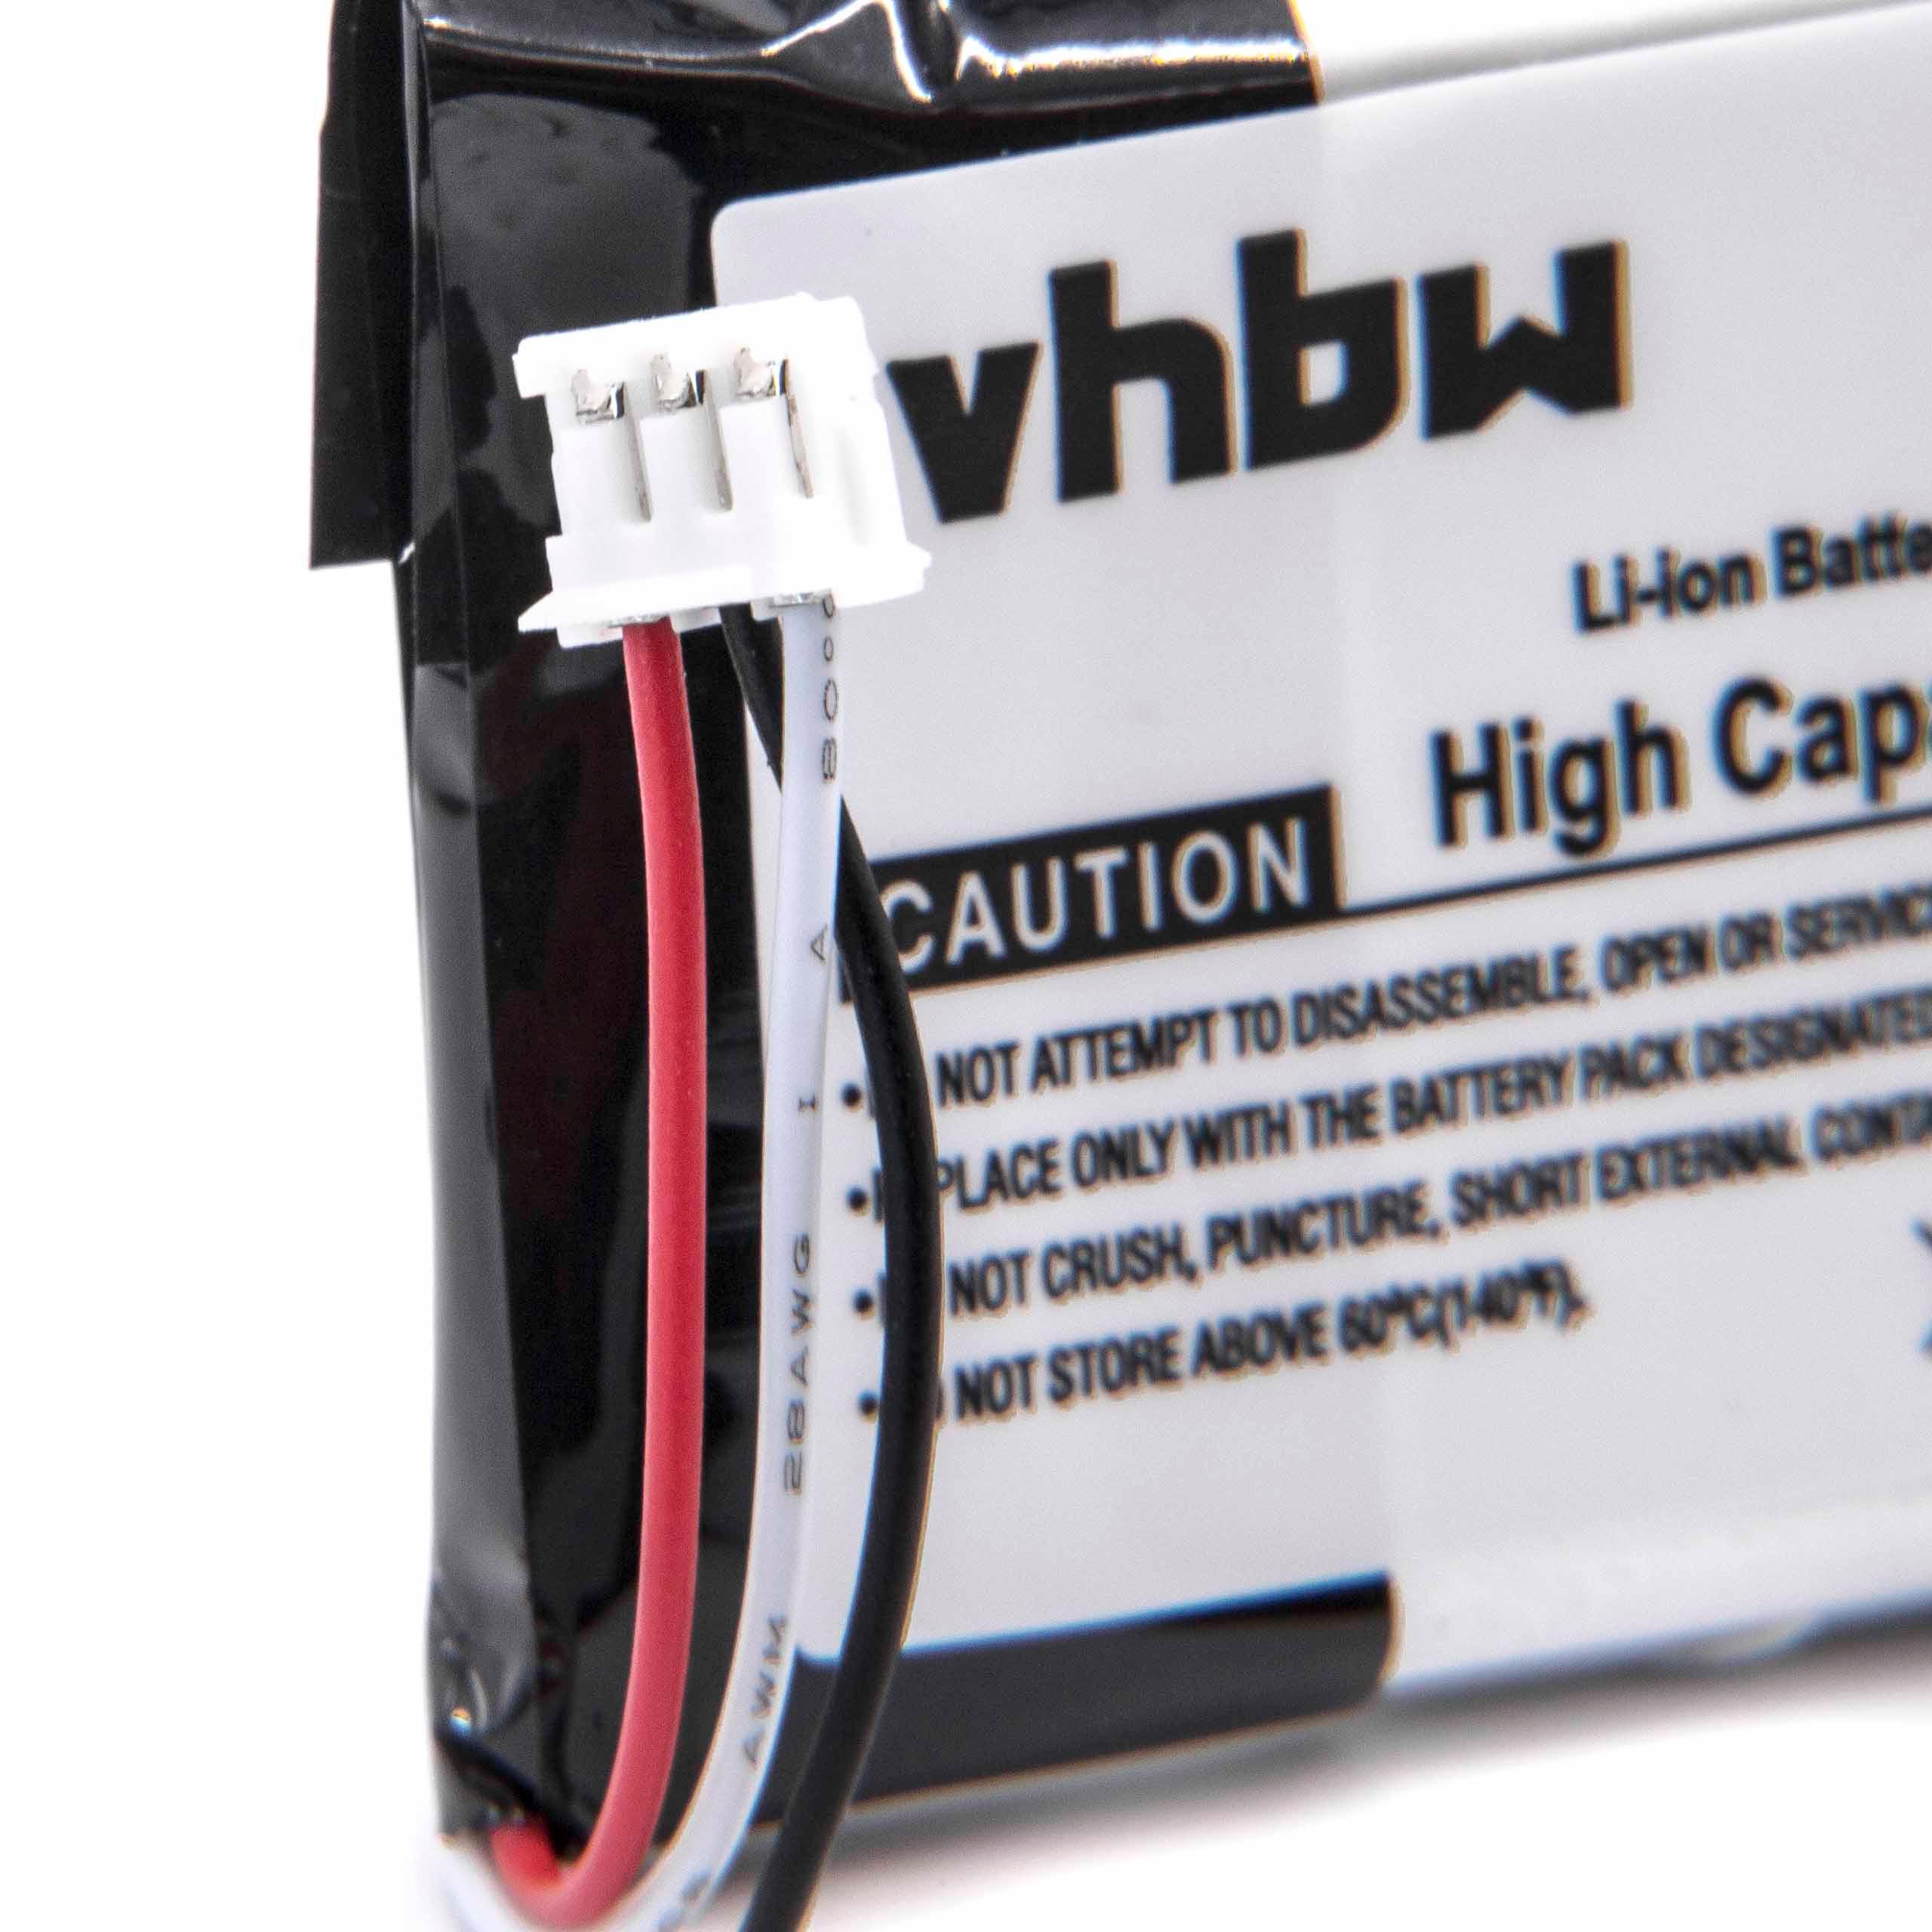 Batterie remplace Philips 5-2762, 5-2770 pour téléphone - 500mAh 3,7V Li-ion